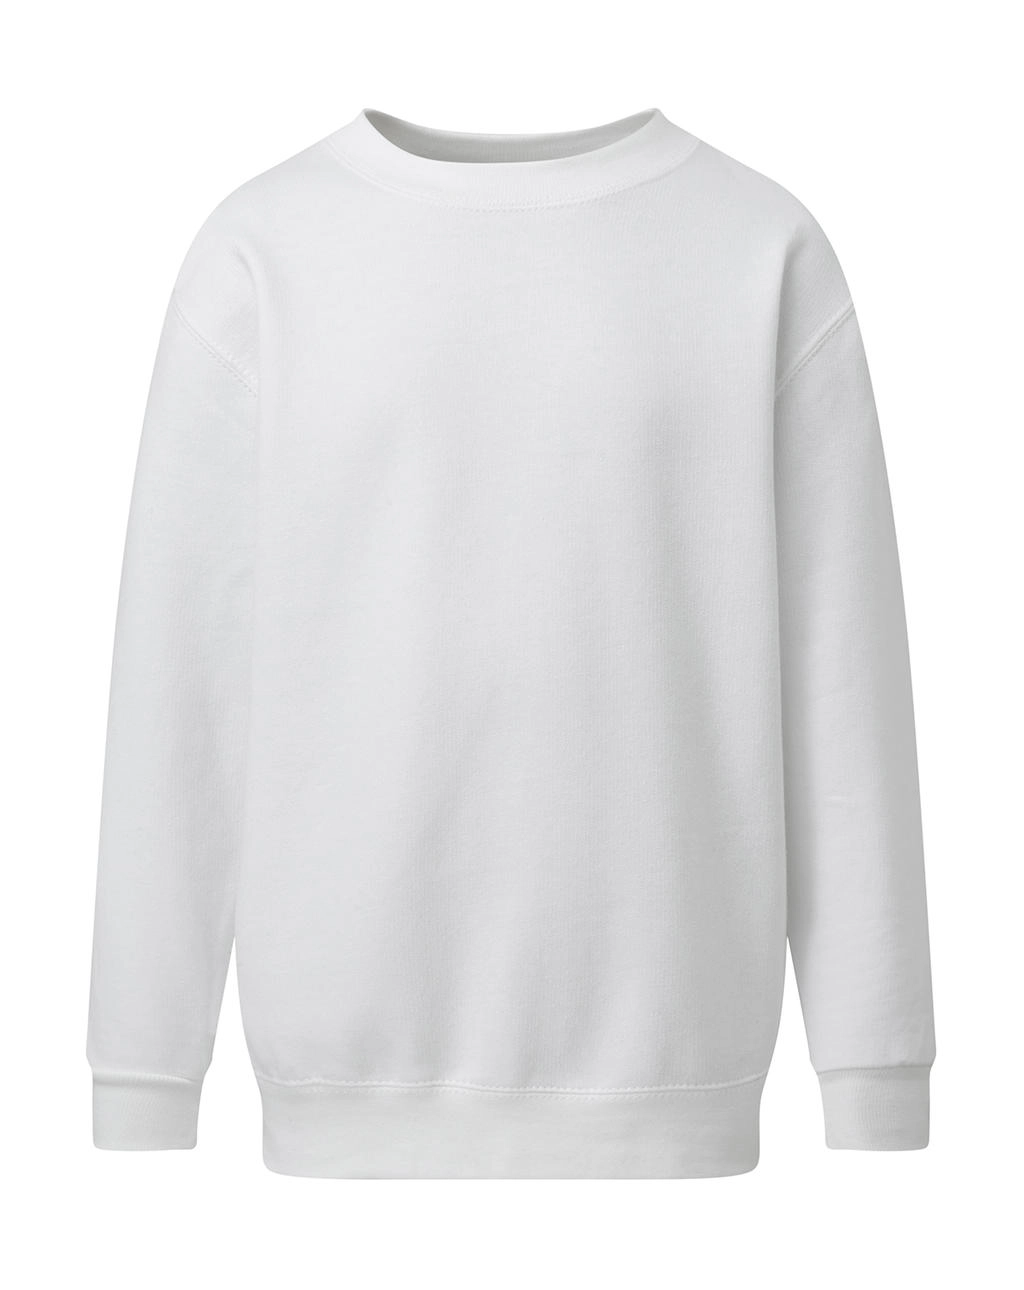 Crew Neck Sweatshirt Kids  zum Besticken und Bedrucken in der Farbe White mit Ihren Logo, Schriftzug oder Motiv.